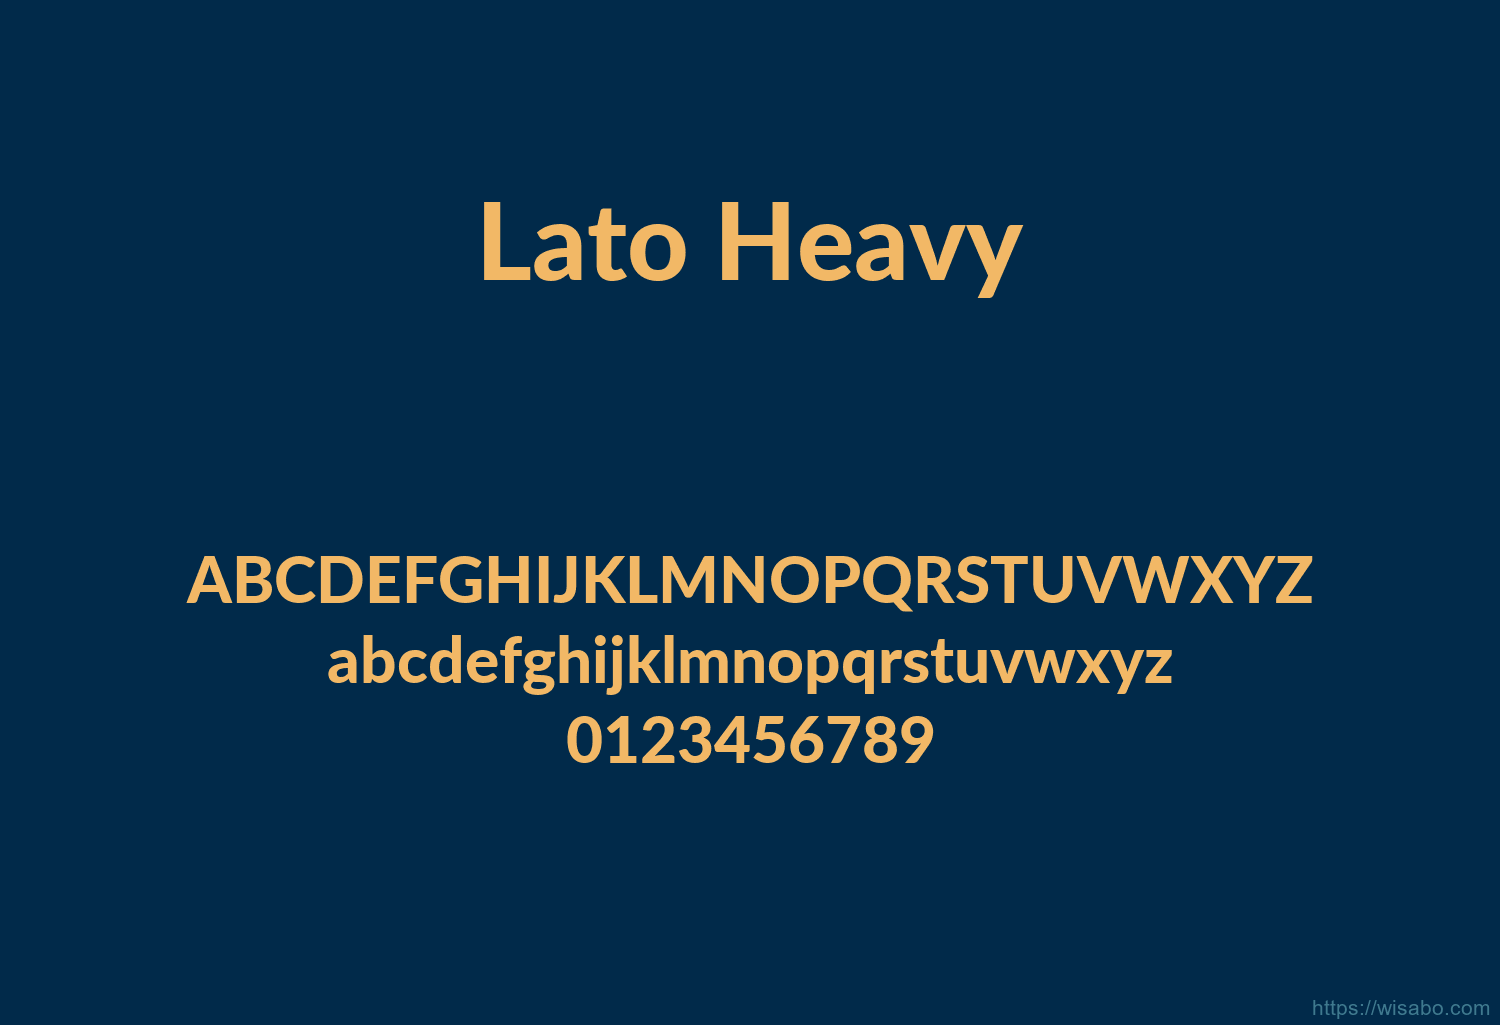 Lato Heavy